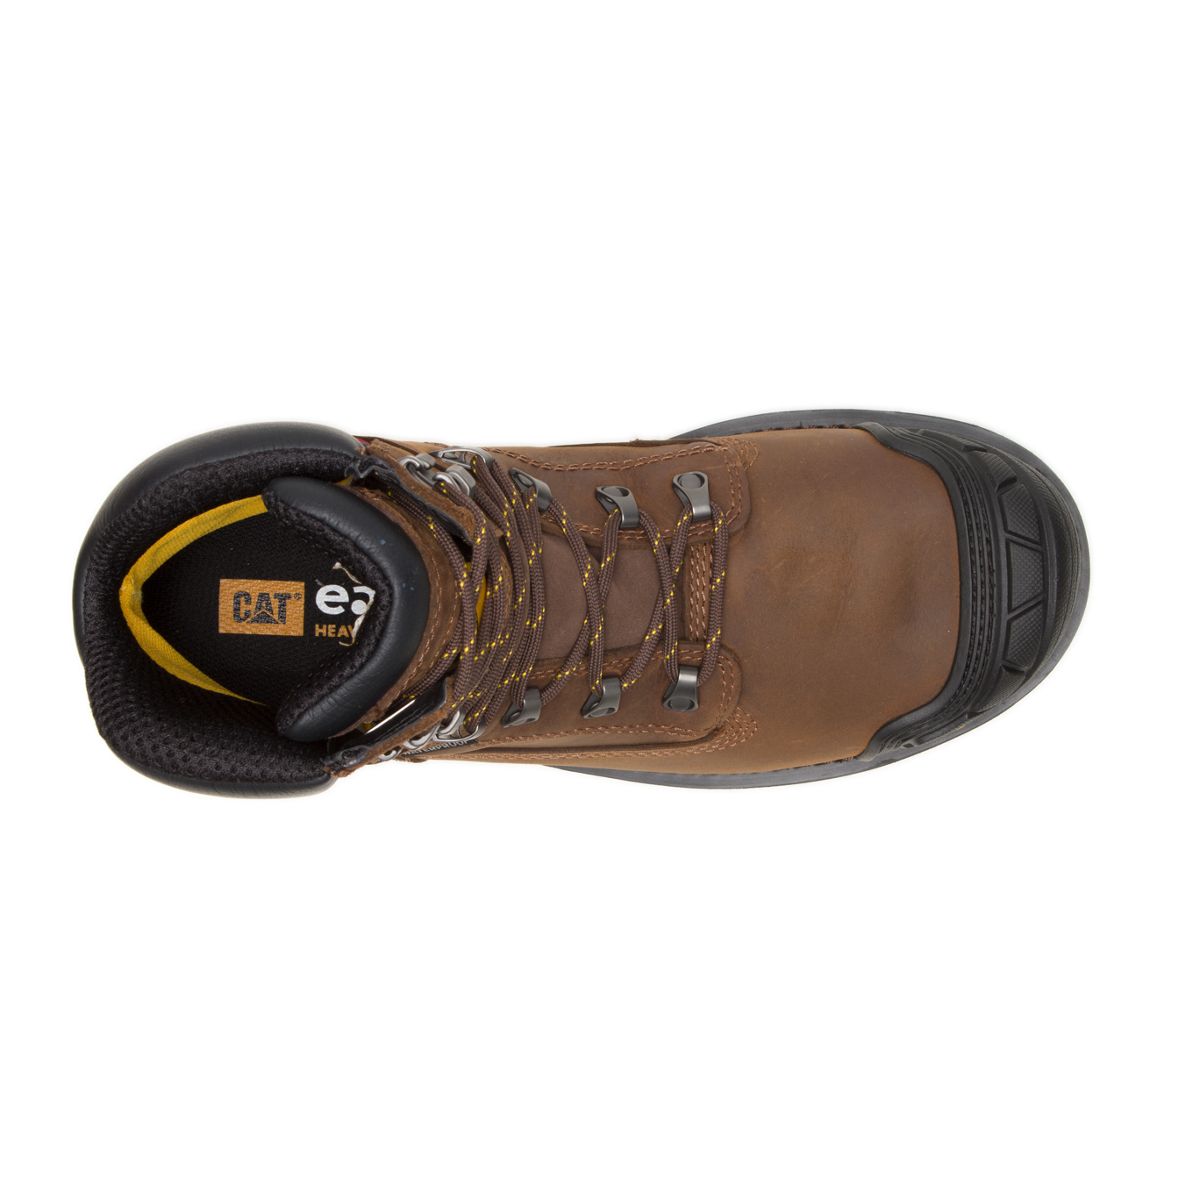 Excavator XL 6" Waterproof Composite Toe Work Boot, Dark Brown, dynamic 7